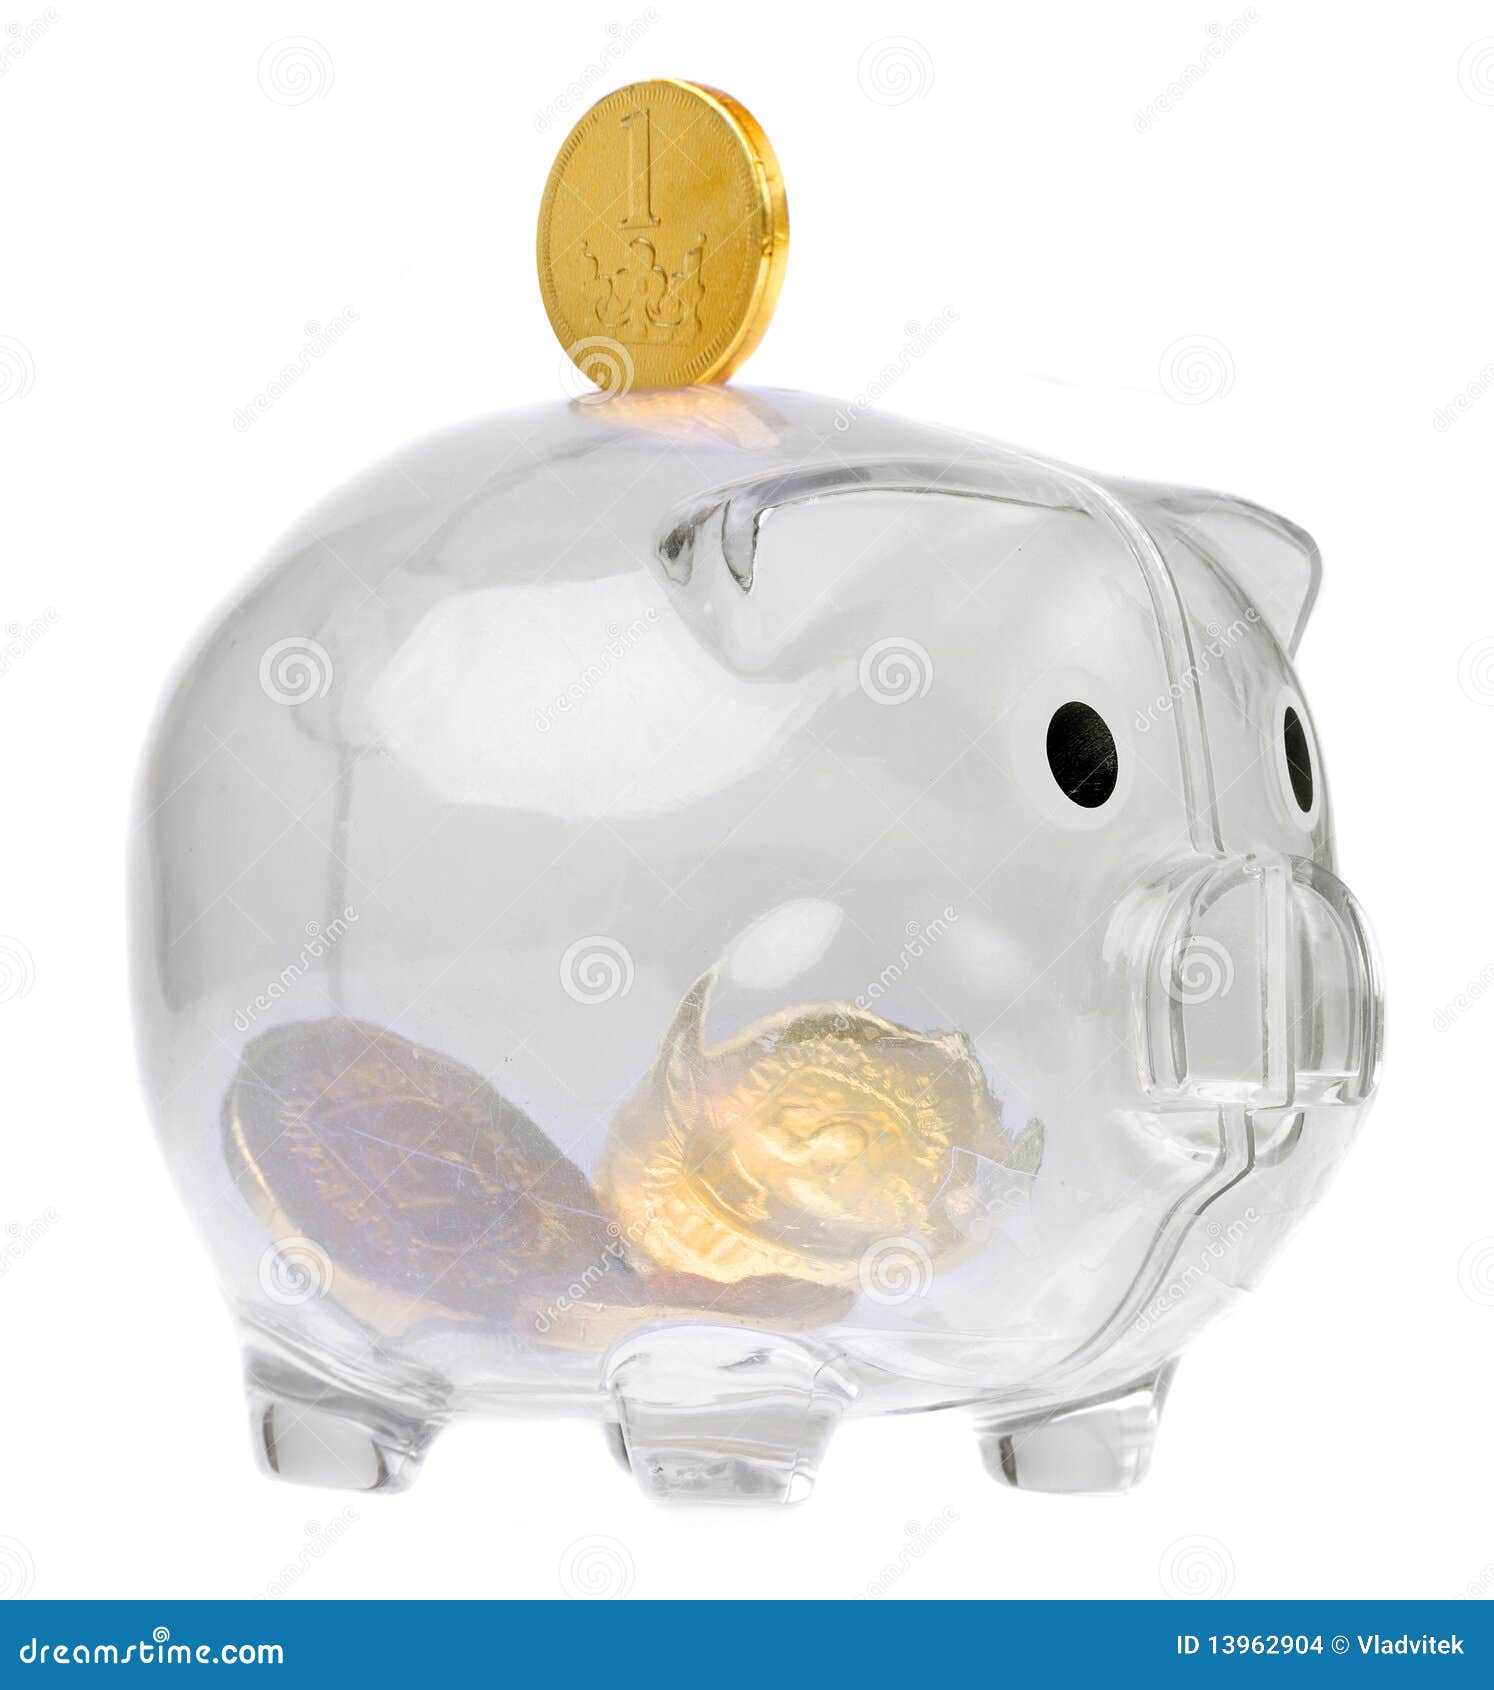 piggy bank style glass moneybox